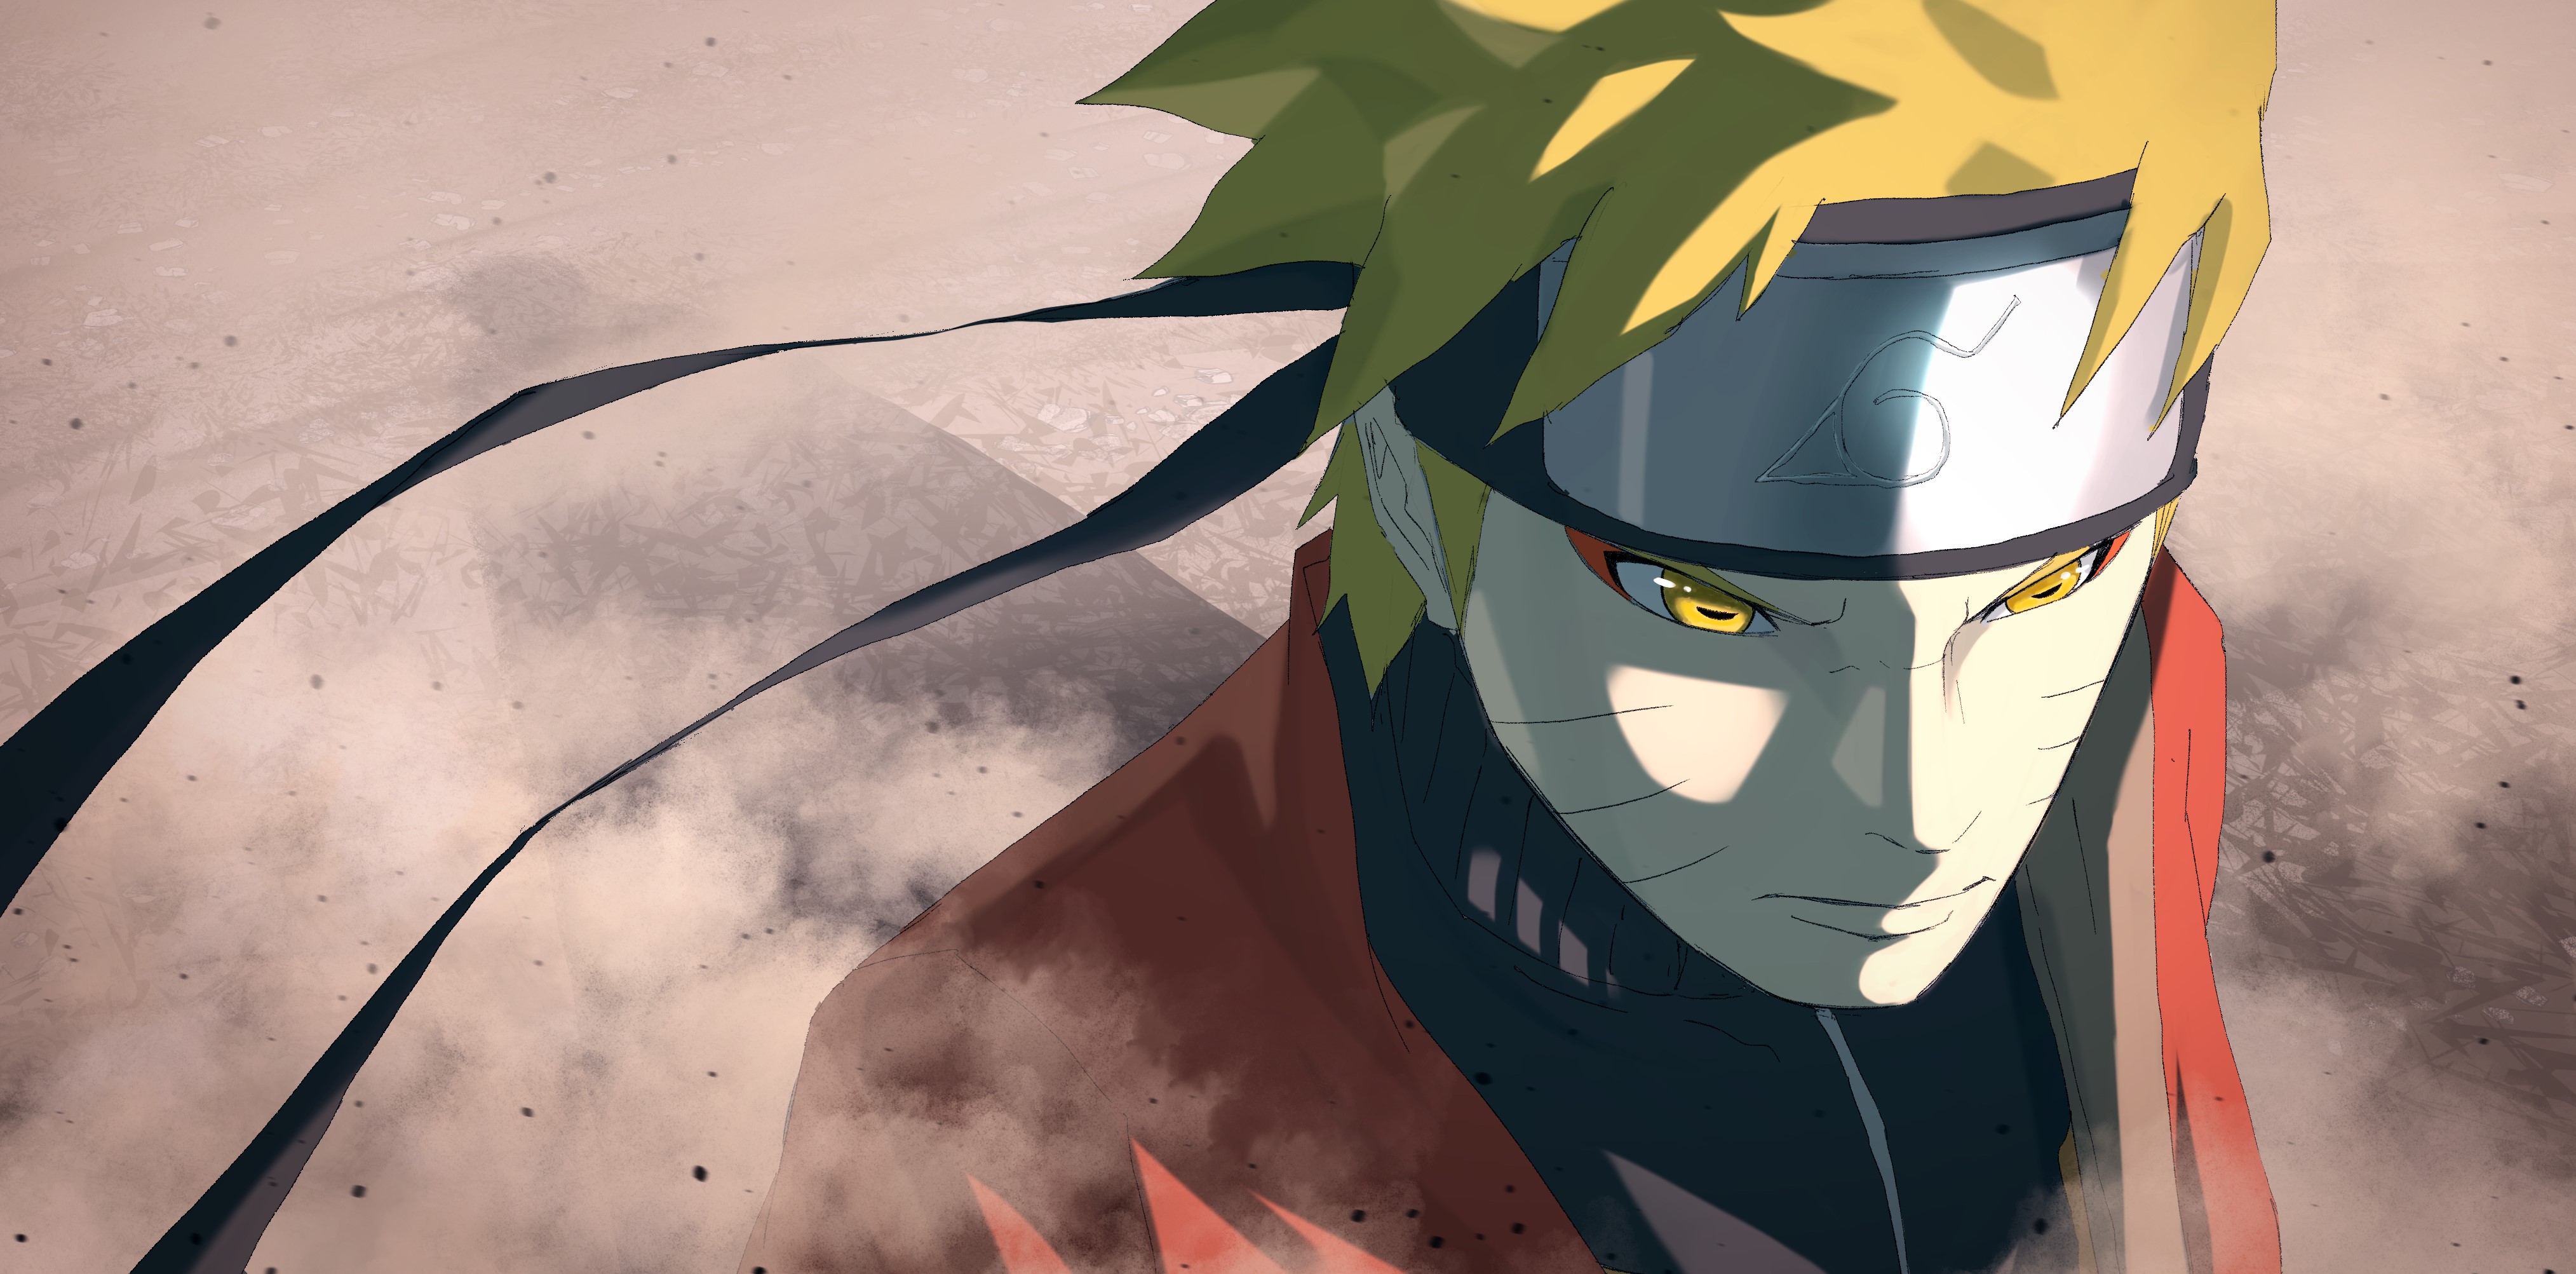 Hãy cùng chiêm ngưỡng bức hình nền HD đầy sắc màu về Naruto, nhân vật anh hùng đầy lòng trung thành và dũng cảm trong câu chuyện anime nổi tiếng nhất mọi thời đại này. 